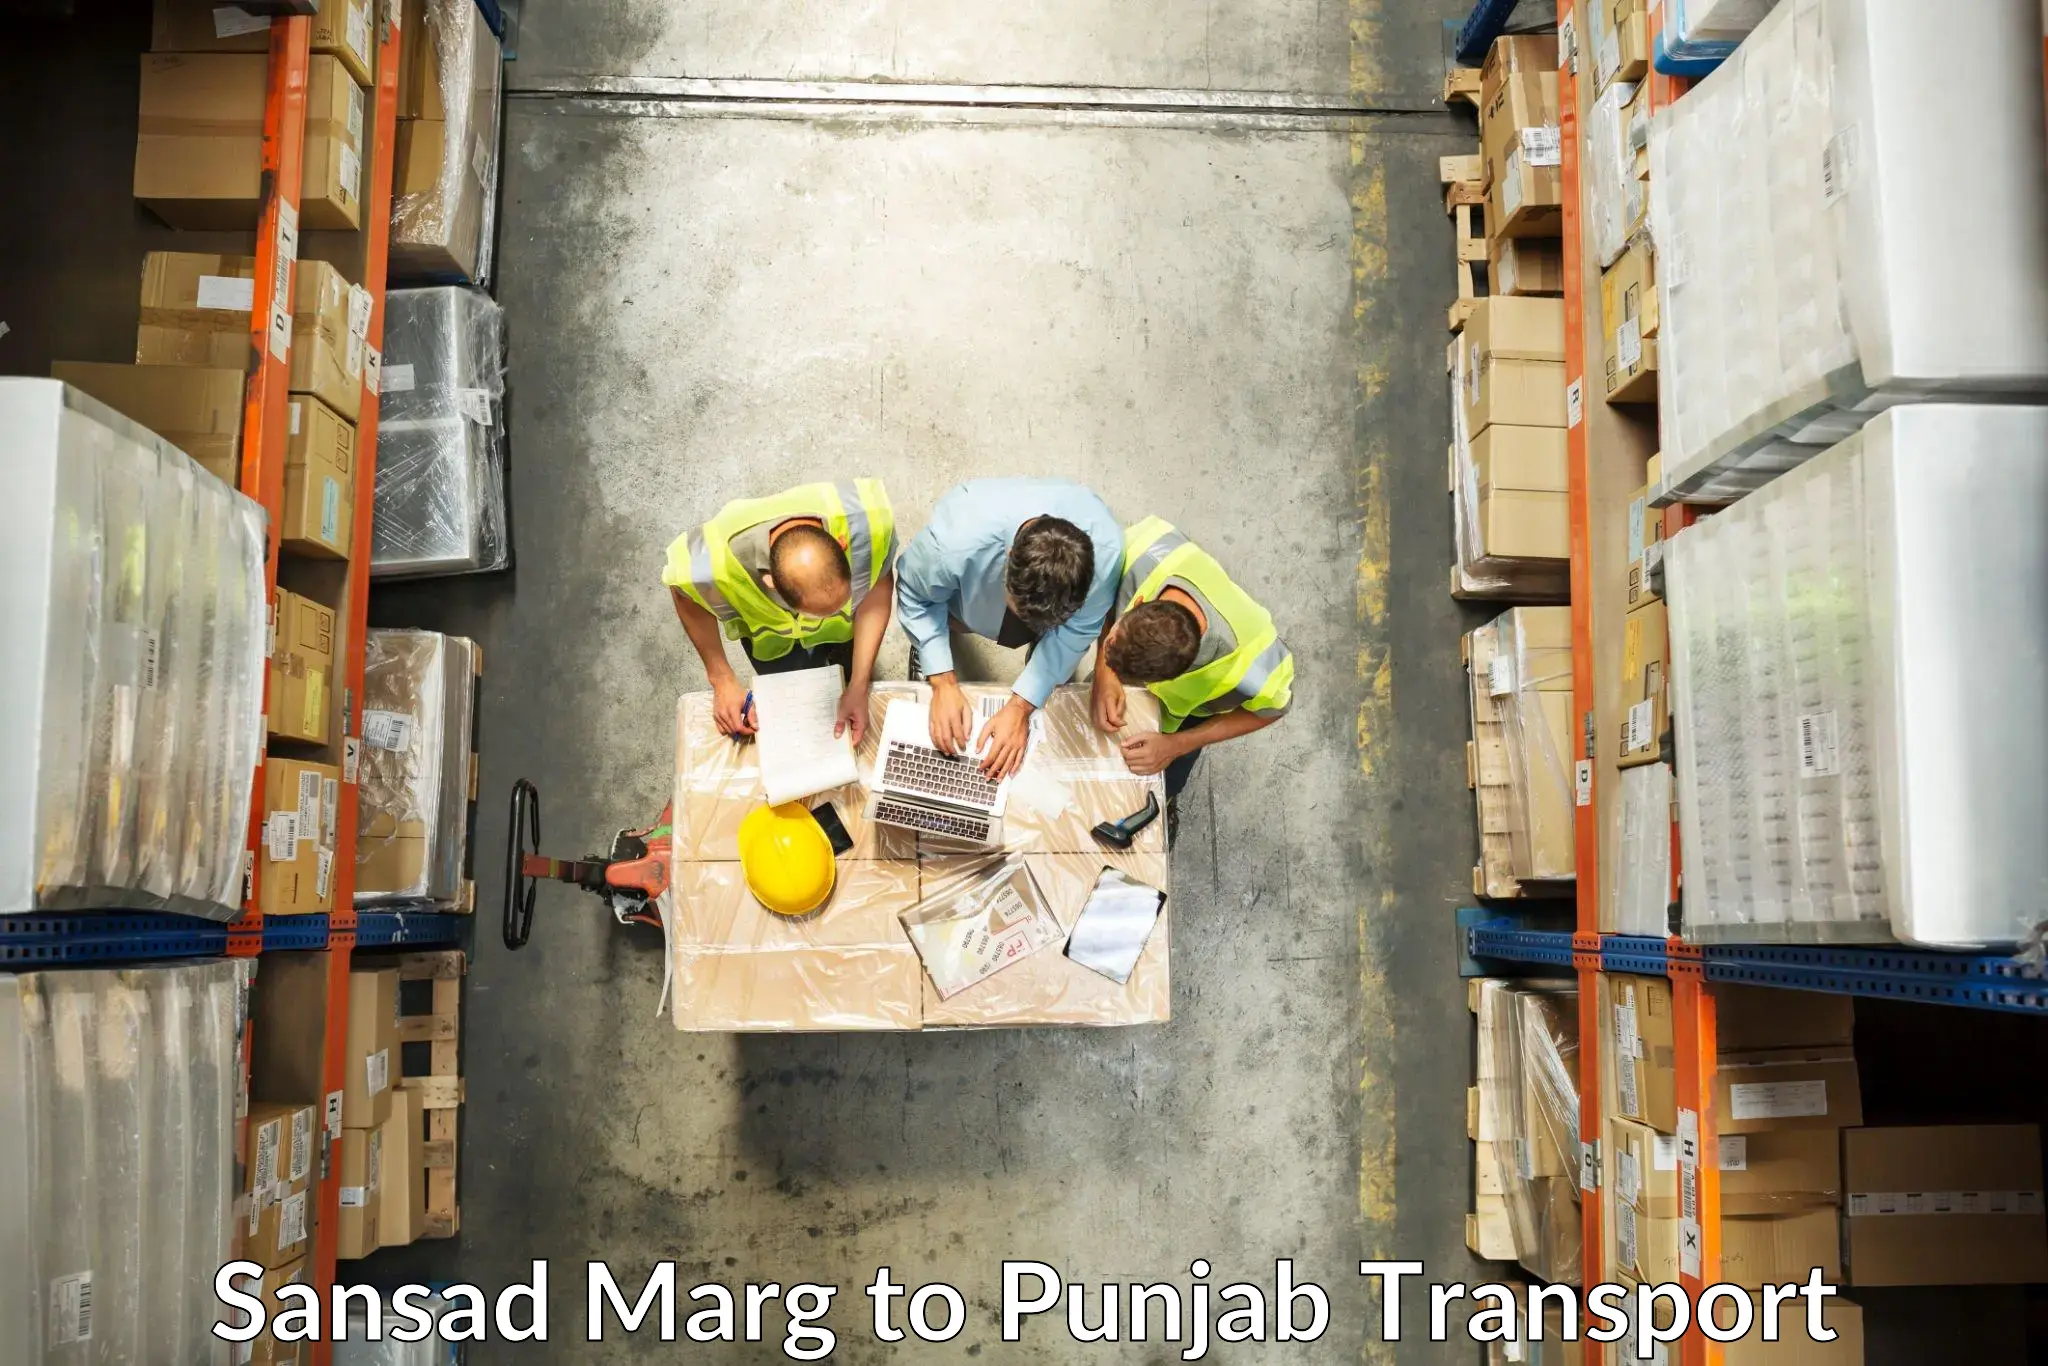 Online transport in Sansad Marg to Punjab